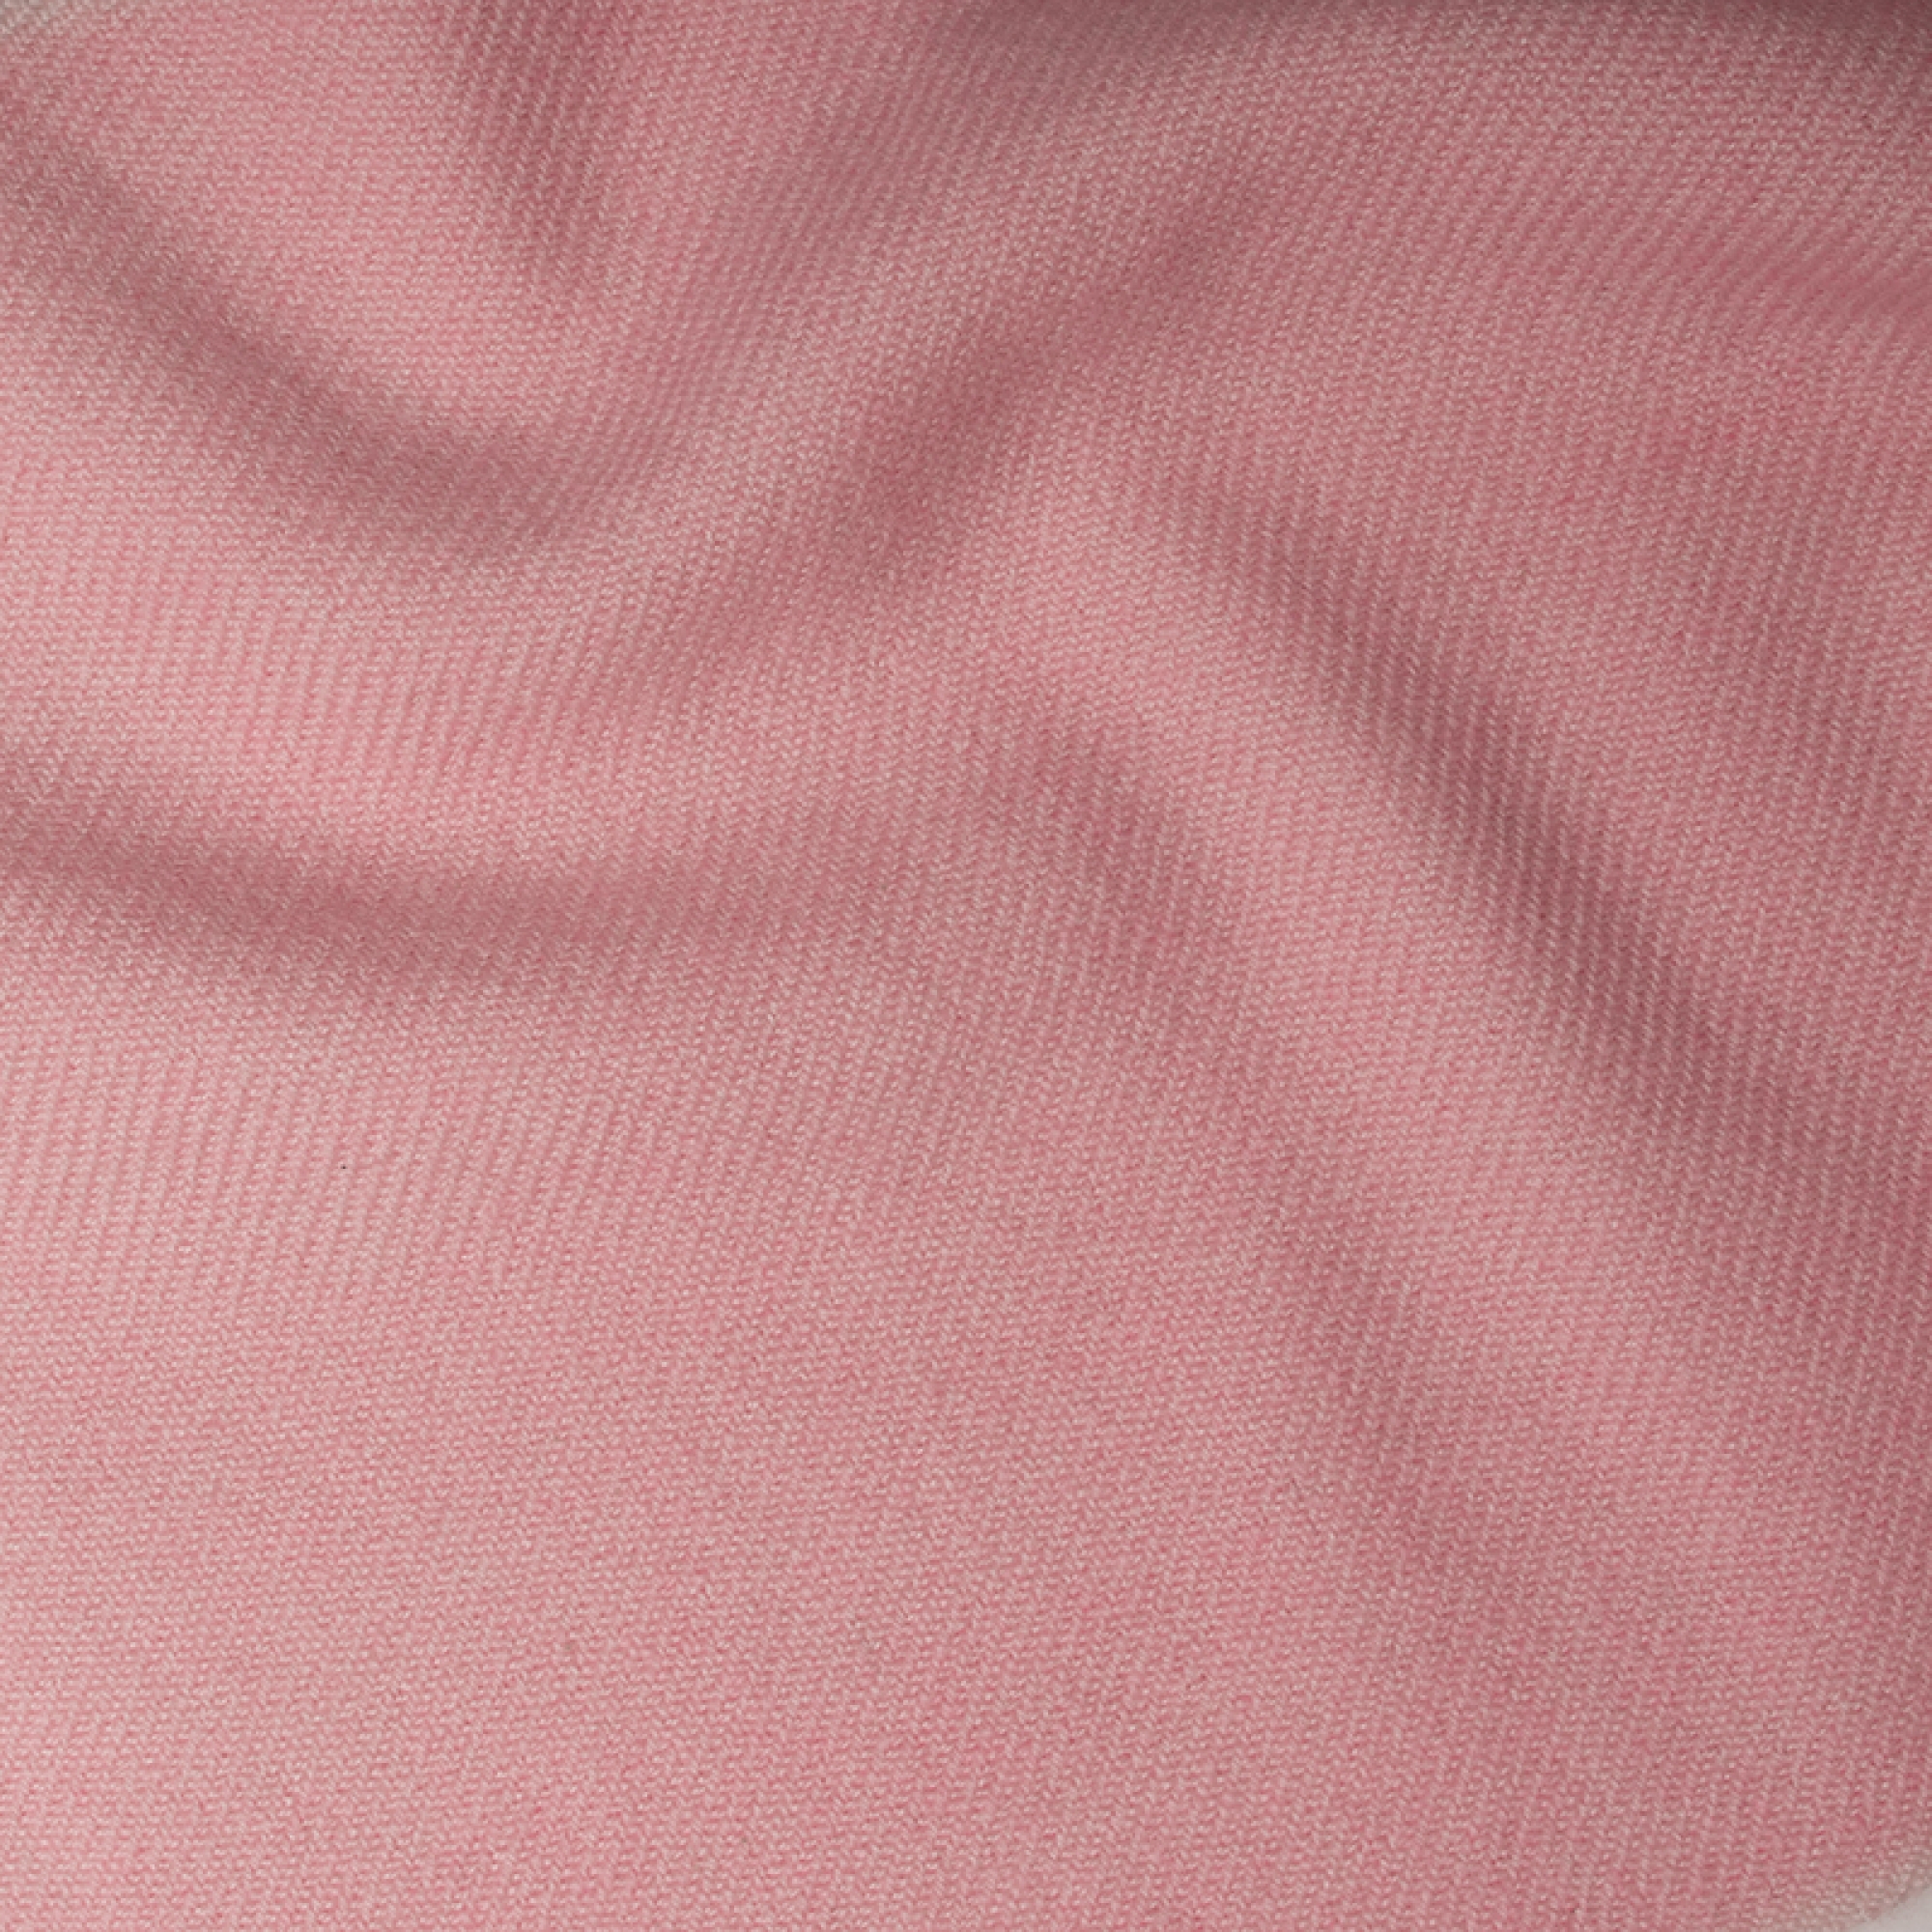 Cashmere accessori novita toodoo plain xl 240 x 260 rosa confetto 240 x 260 cm